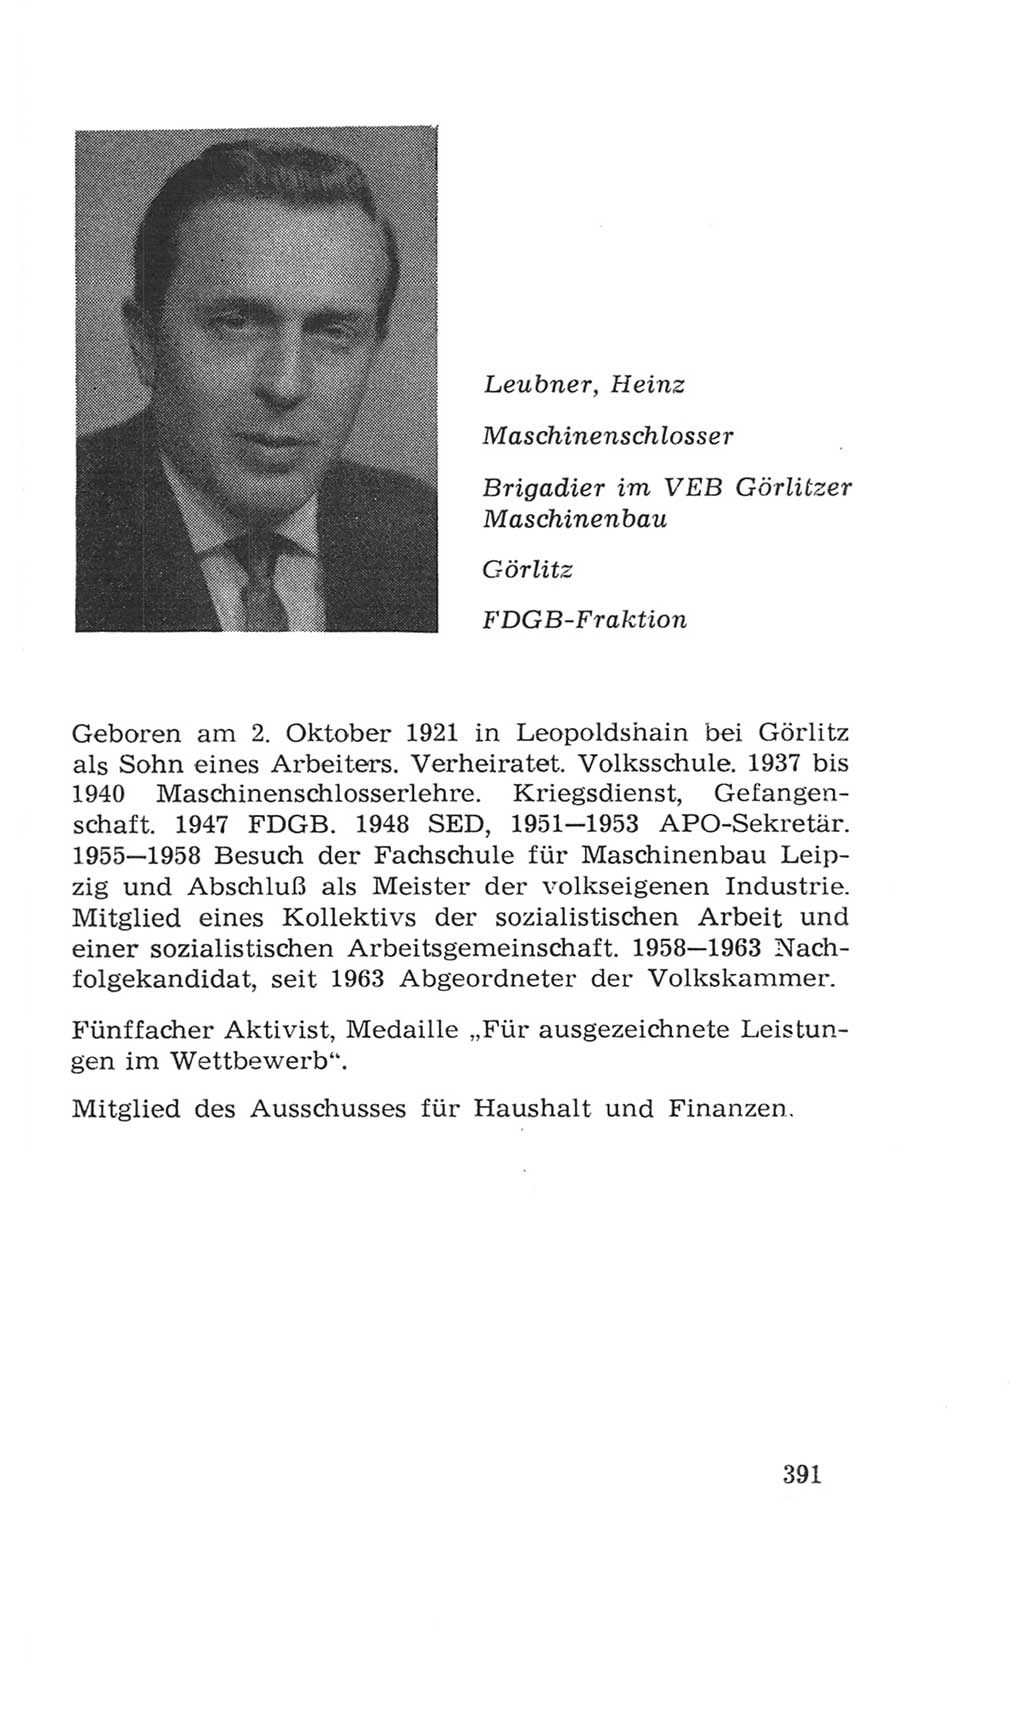 Volkskammer (VK) der Deutschen Demokratischen Republik (DDR), 4. Wahlperiode 1963-1967, Seite 391 (VK. DDR 4. WP. 1963-1967, S. 391)